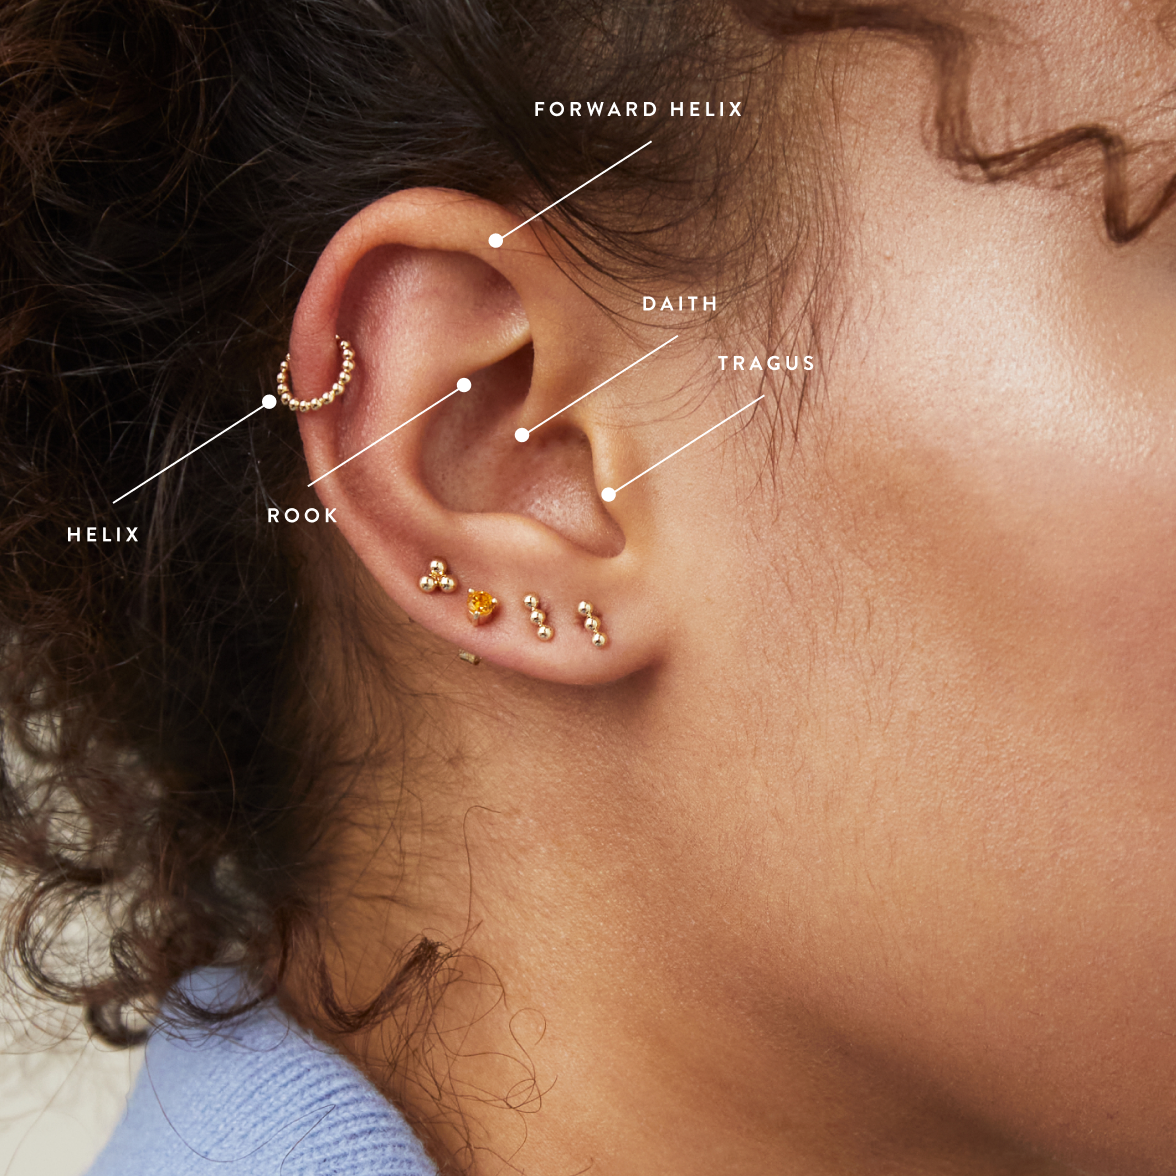 upper ear piercing